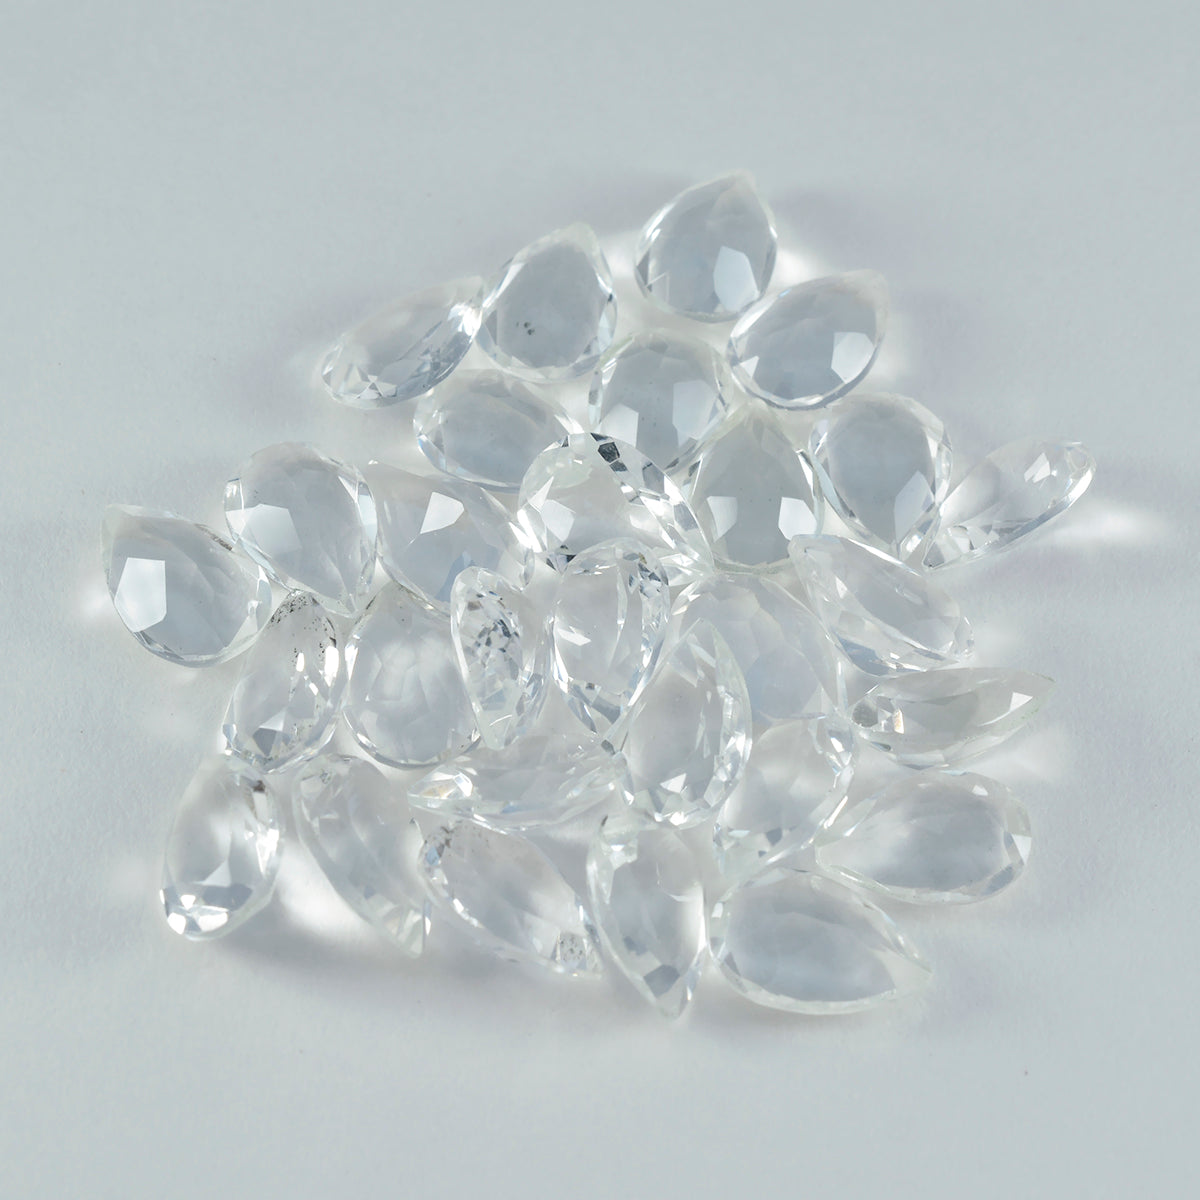 Riyogems 1 pieza de cristal blanco de cuarzo facetado de 7x10 mm con forma de pera, piedra preciosa de calidad sorprendente